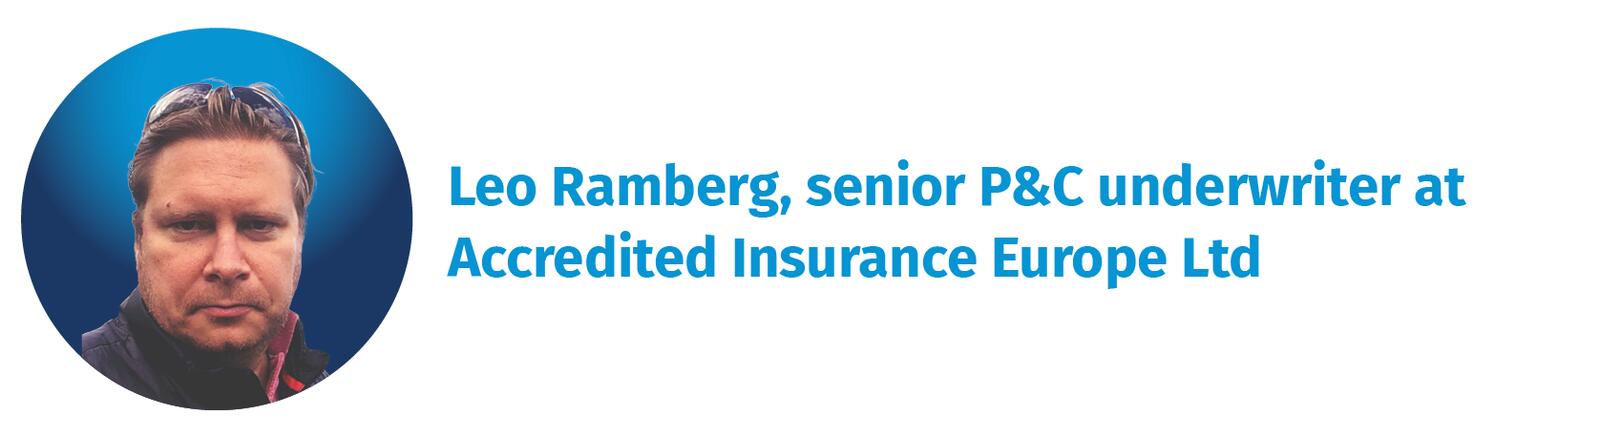 Leo-Ramberg,-senior-P&C-underwriter-at-Accredited-Insurance-Europe-Ltd